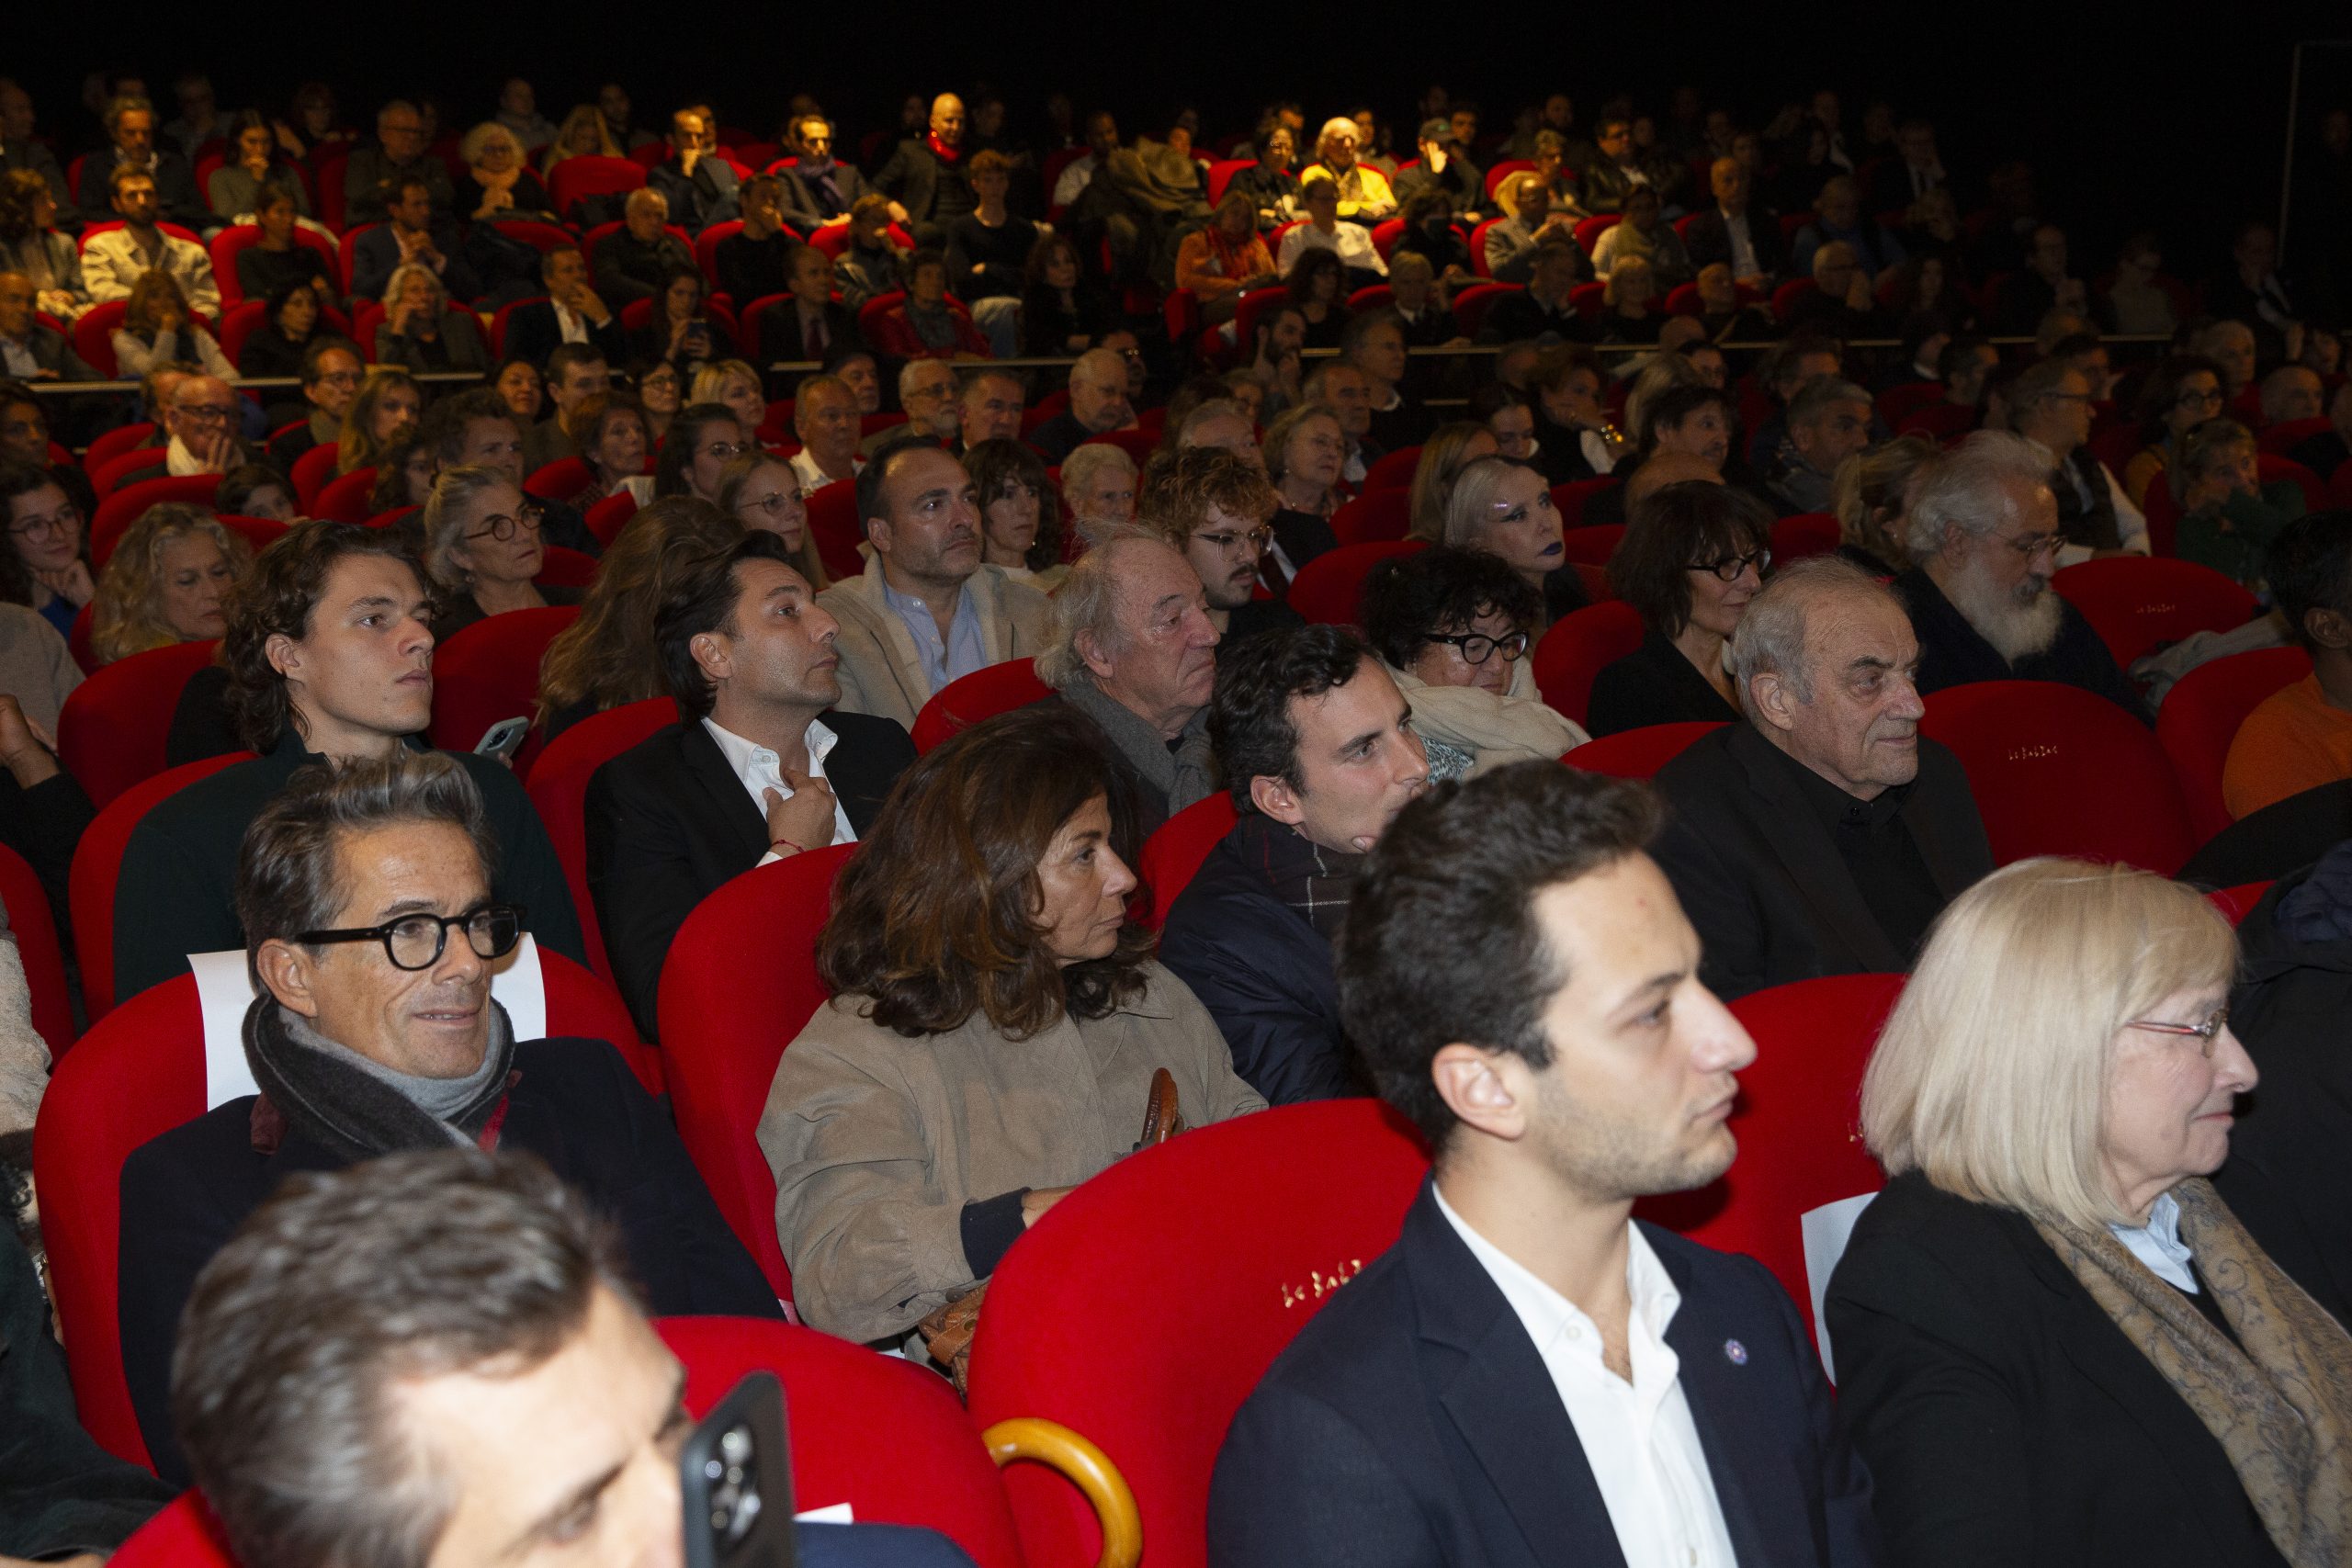 Le public du Balzac pour « L'Ukraine au coeur » de BHL, la salle est pleine tout le public est assis dans des fauteuils rouges.